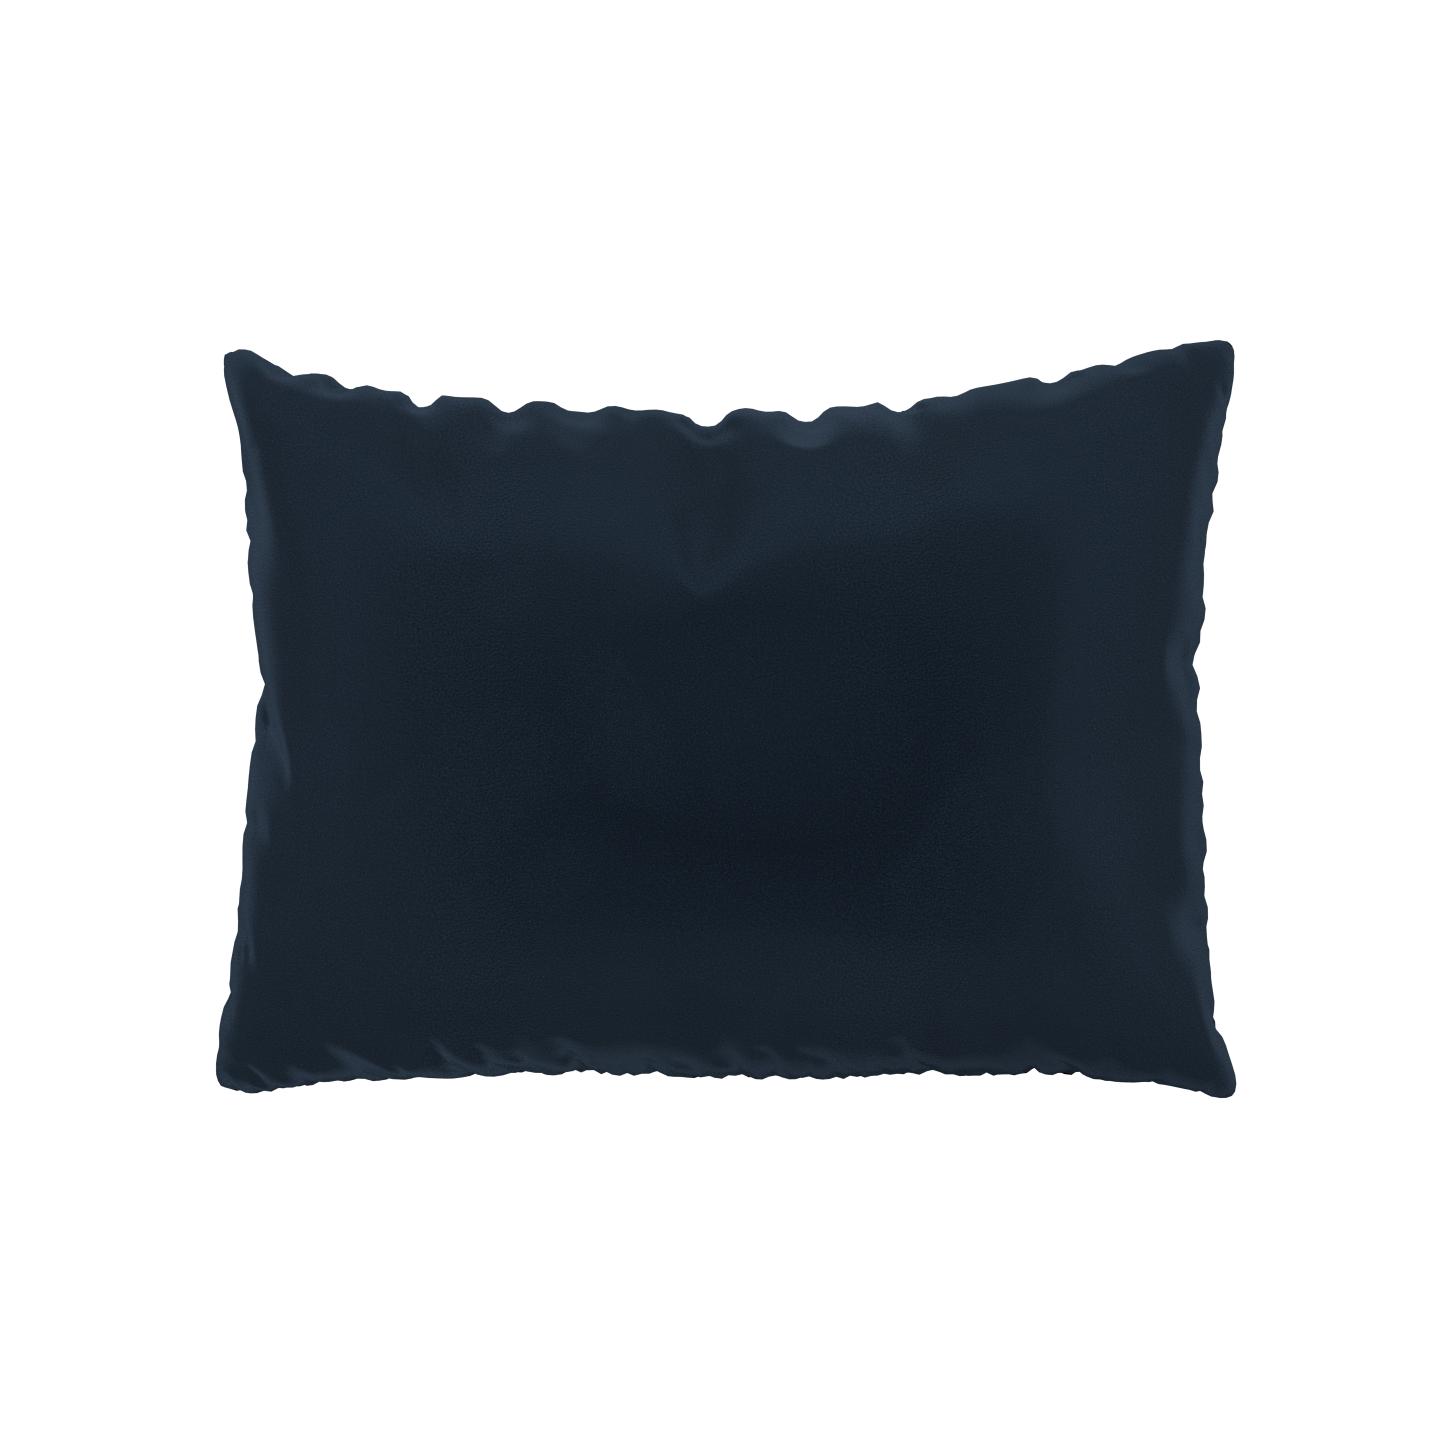 MYCS Coussin Bleu Nuit - 48x65 cm - Housse en Velours. Coussin de canapé moelleux